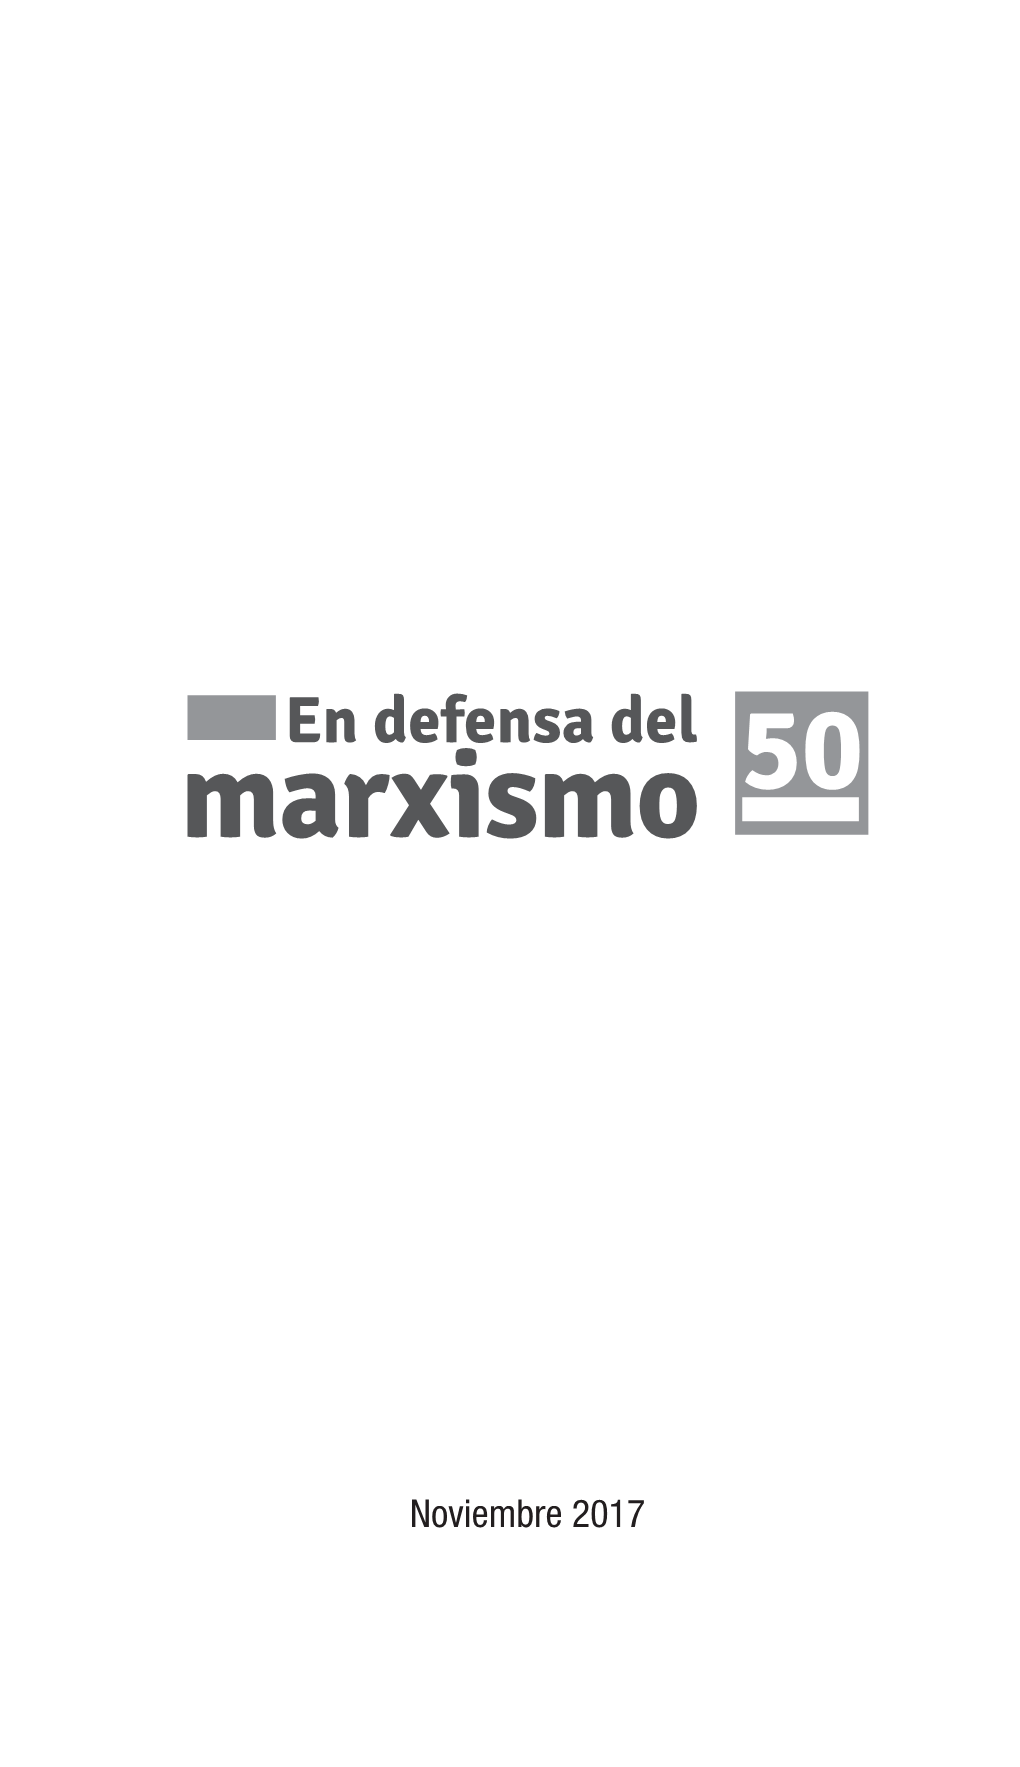 Noviembre 2017 En Defensa Del Marxismo Po.Endefensadelmarxismo@Gmail.Com Consejo De Redacción: Pablo Heller, Christian Rath Y Rafael Santos